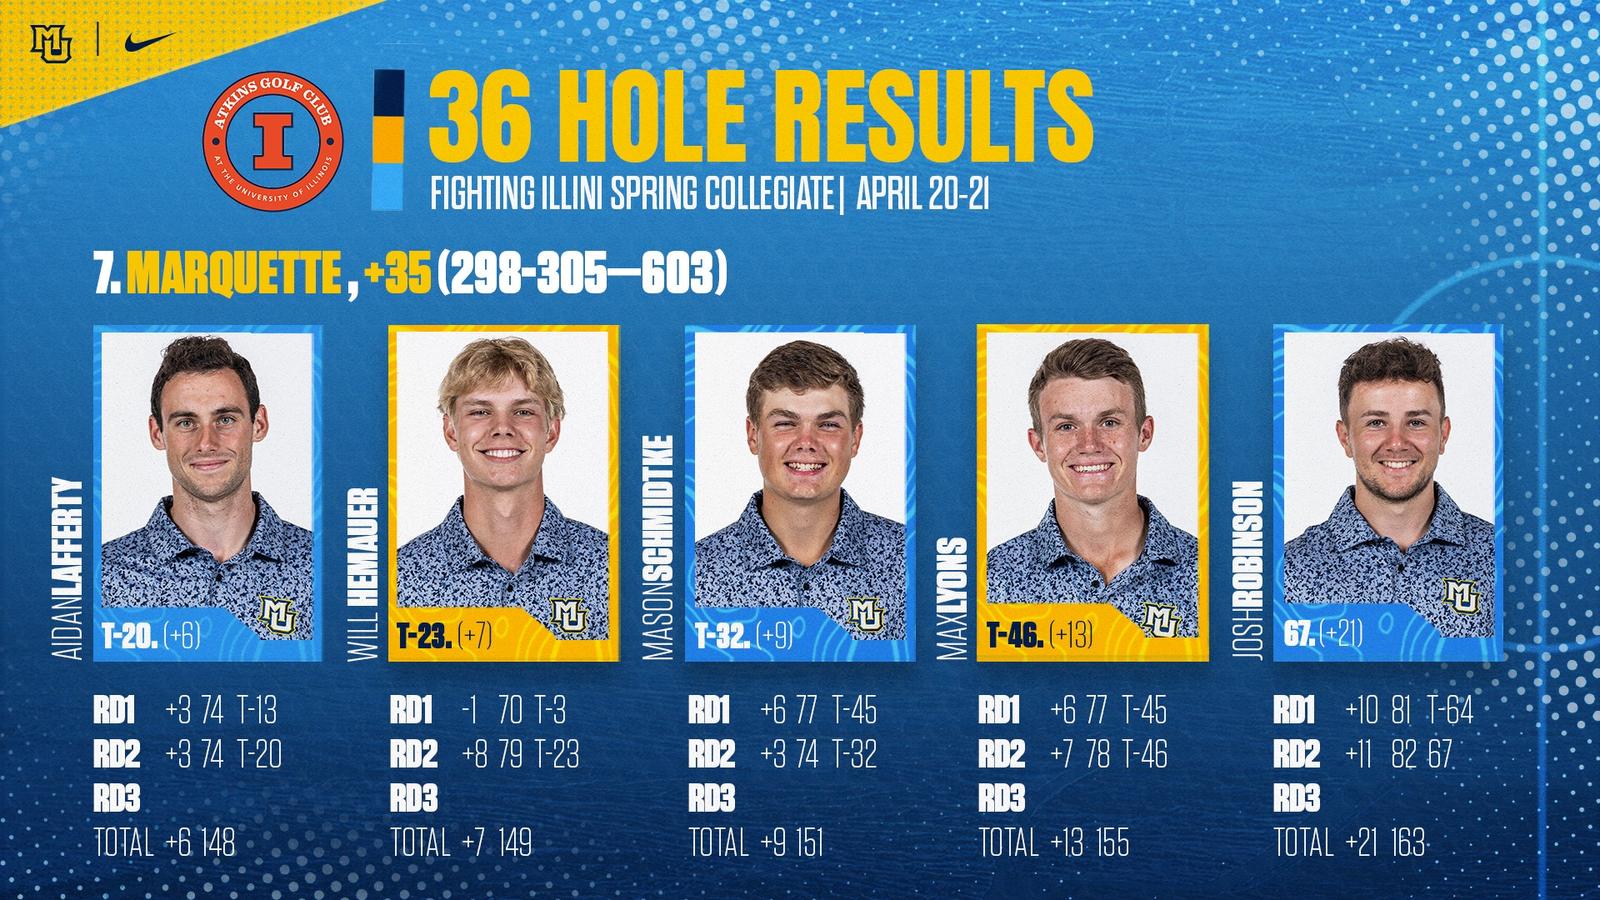 Golf through 36 holes at Fighting Illini Spring Collegiate